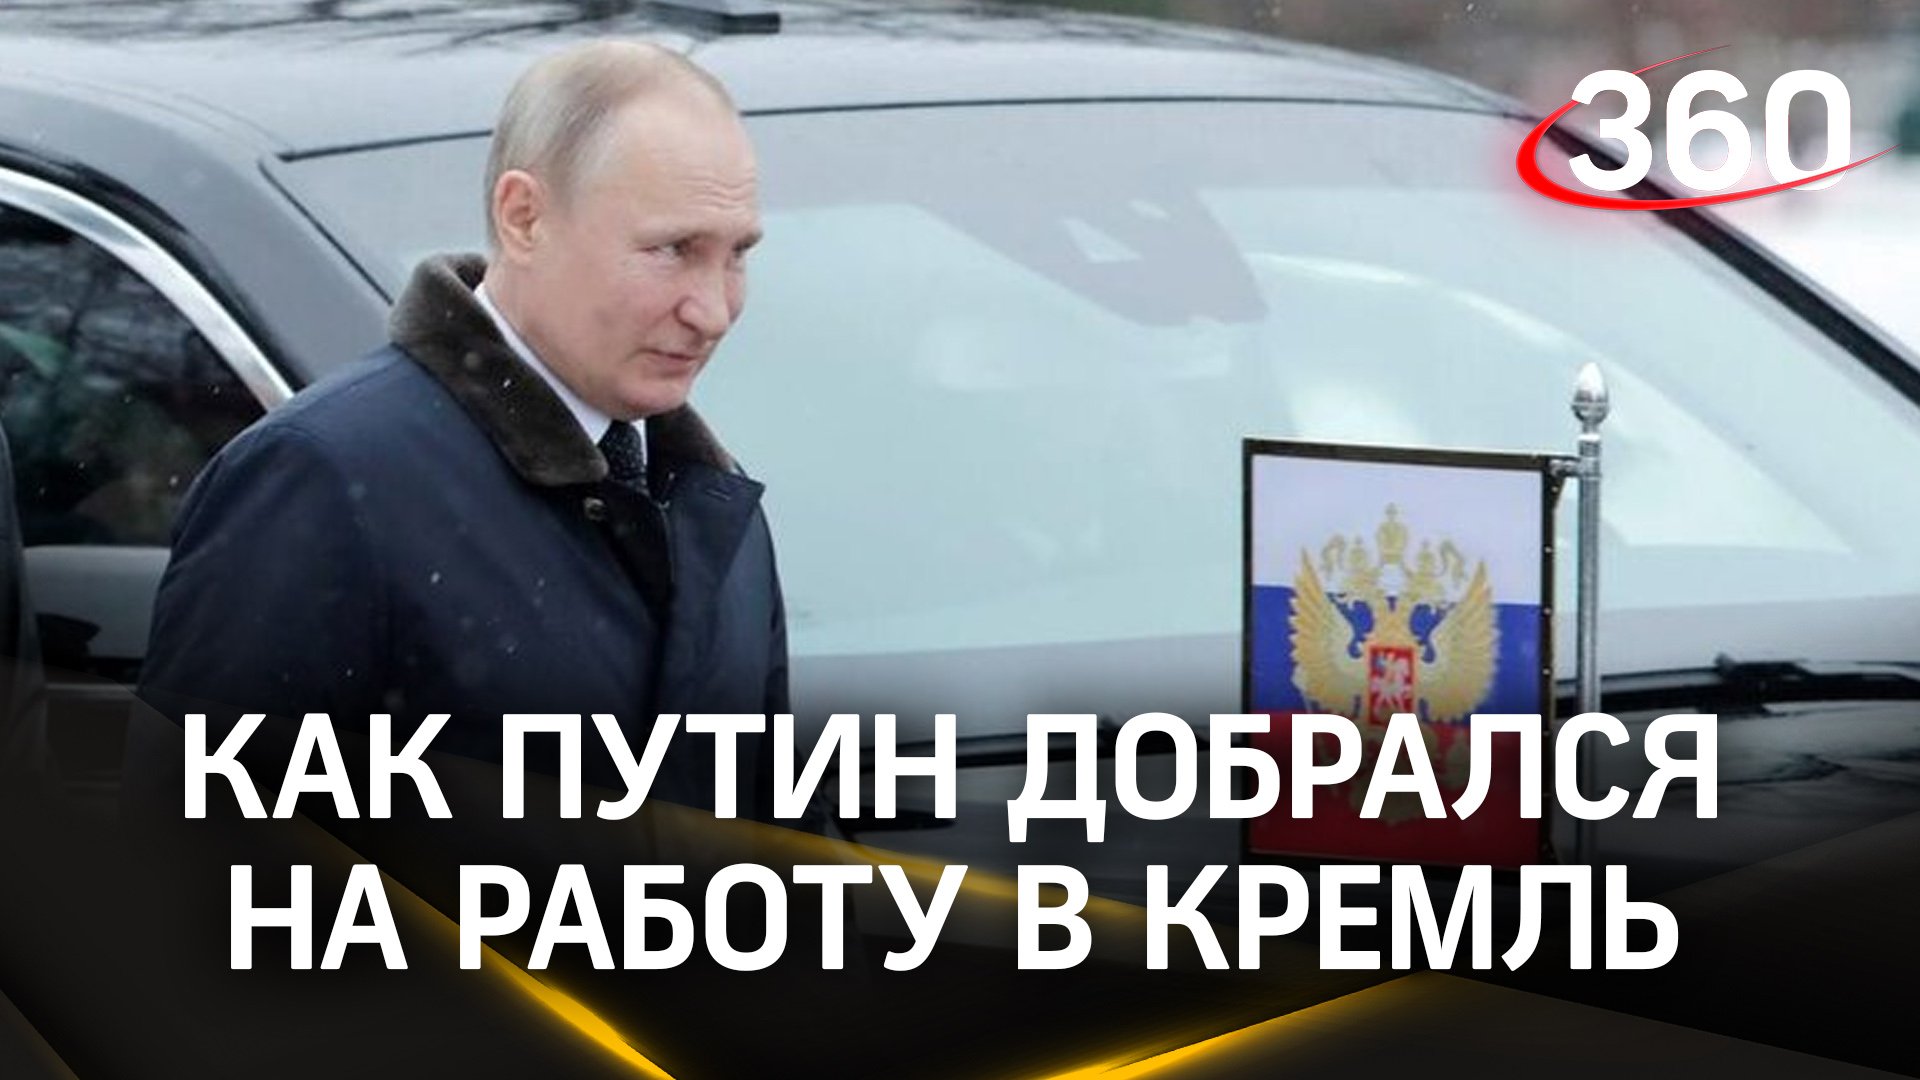 Как Путин добрался на работу в Кремль, несмотря на аномальный снегопад в Москве?